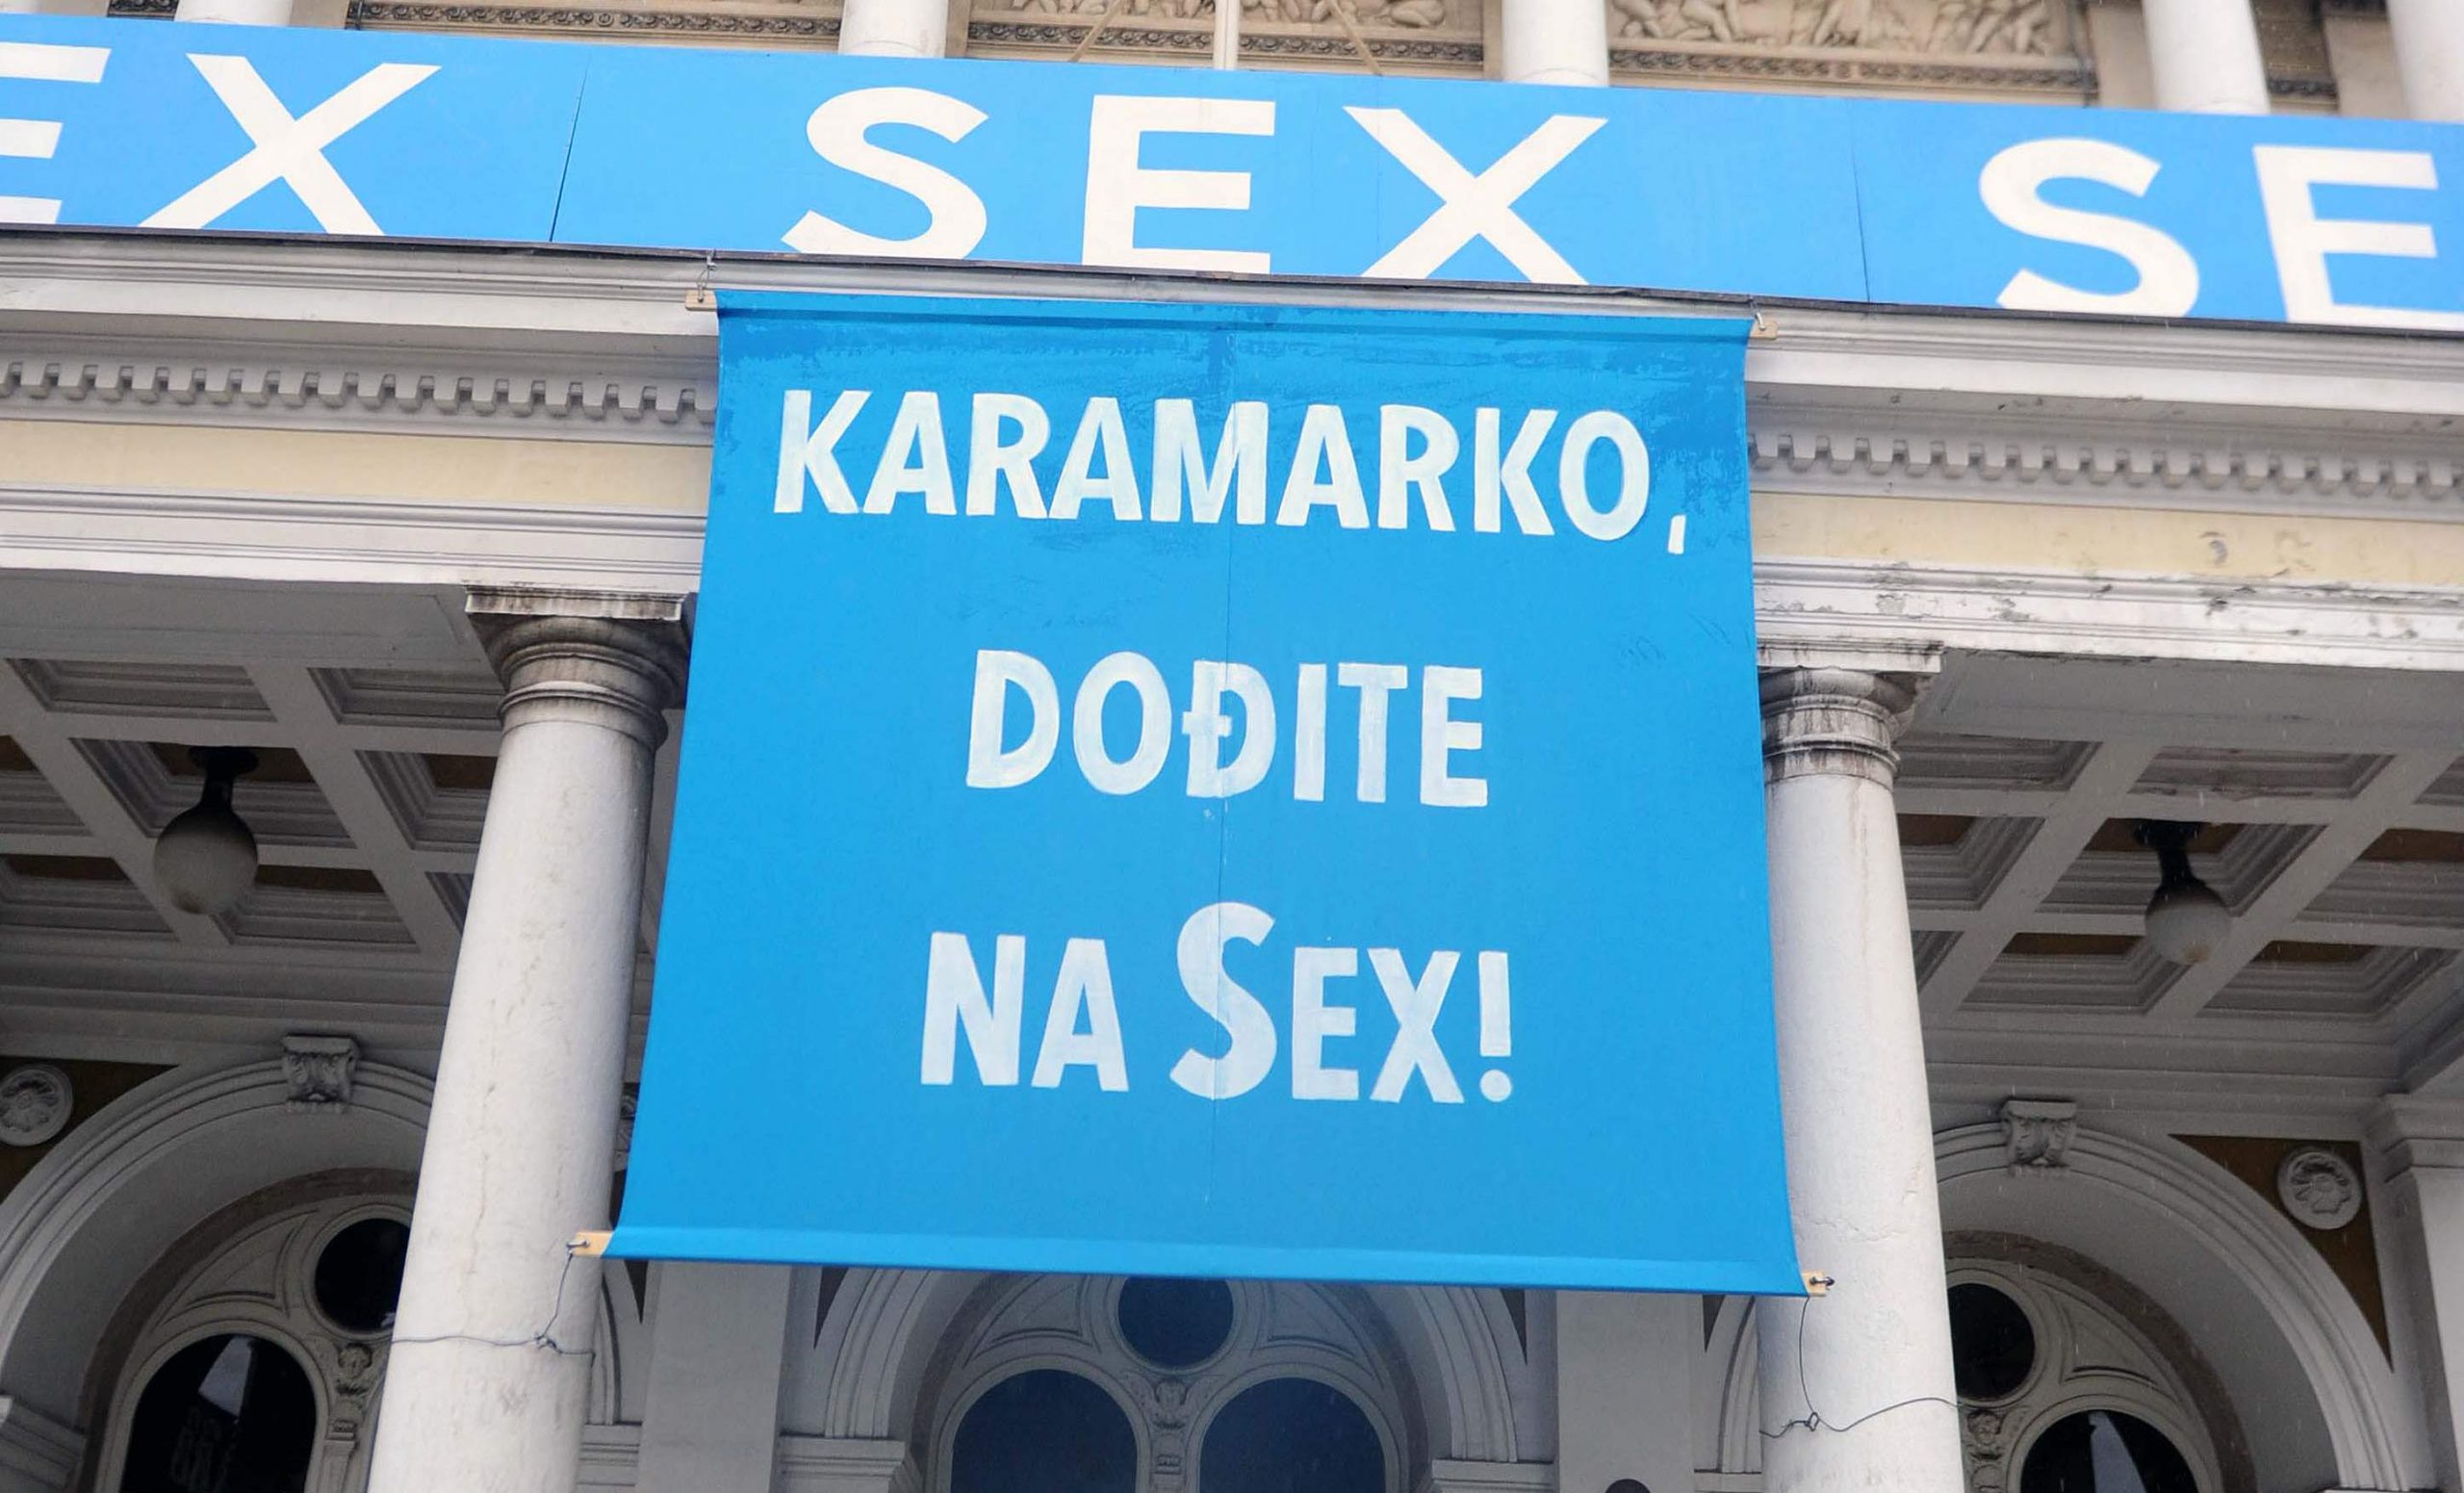 Karamarko dodjite na seks